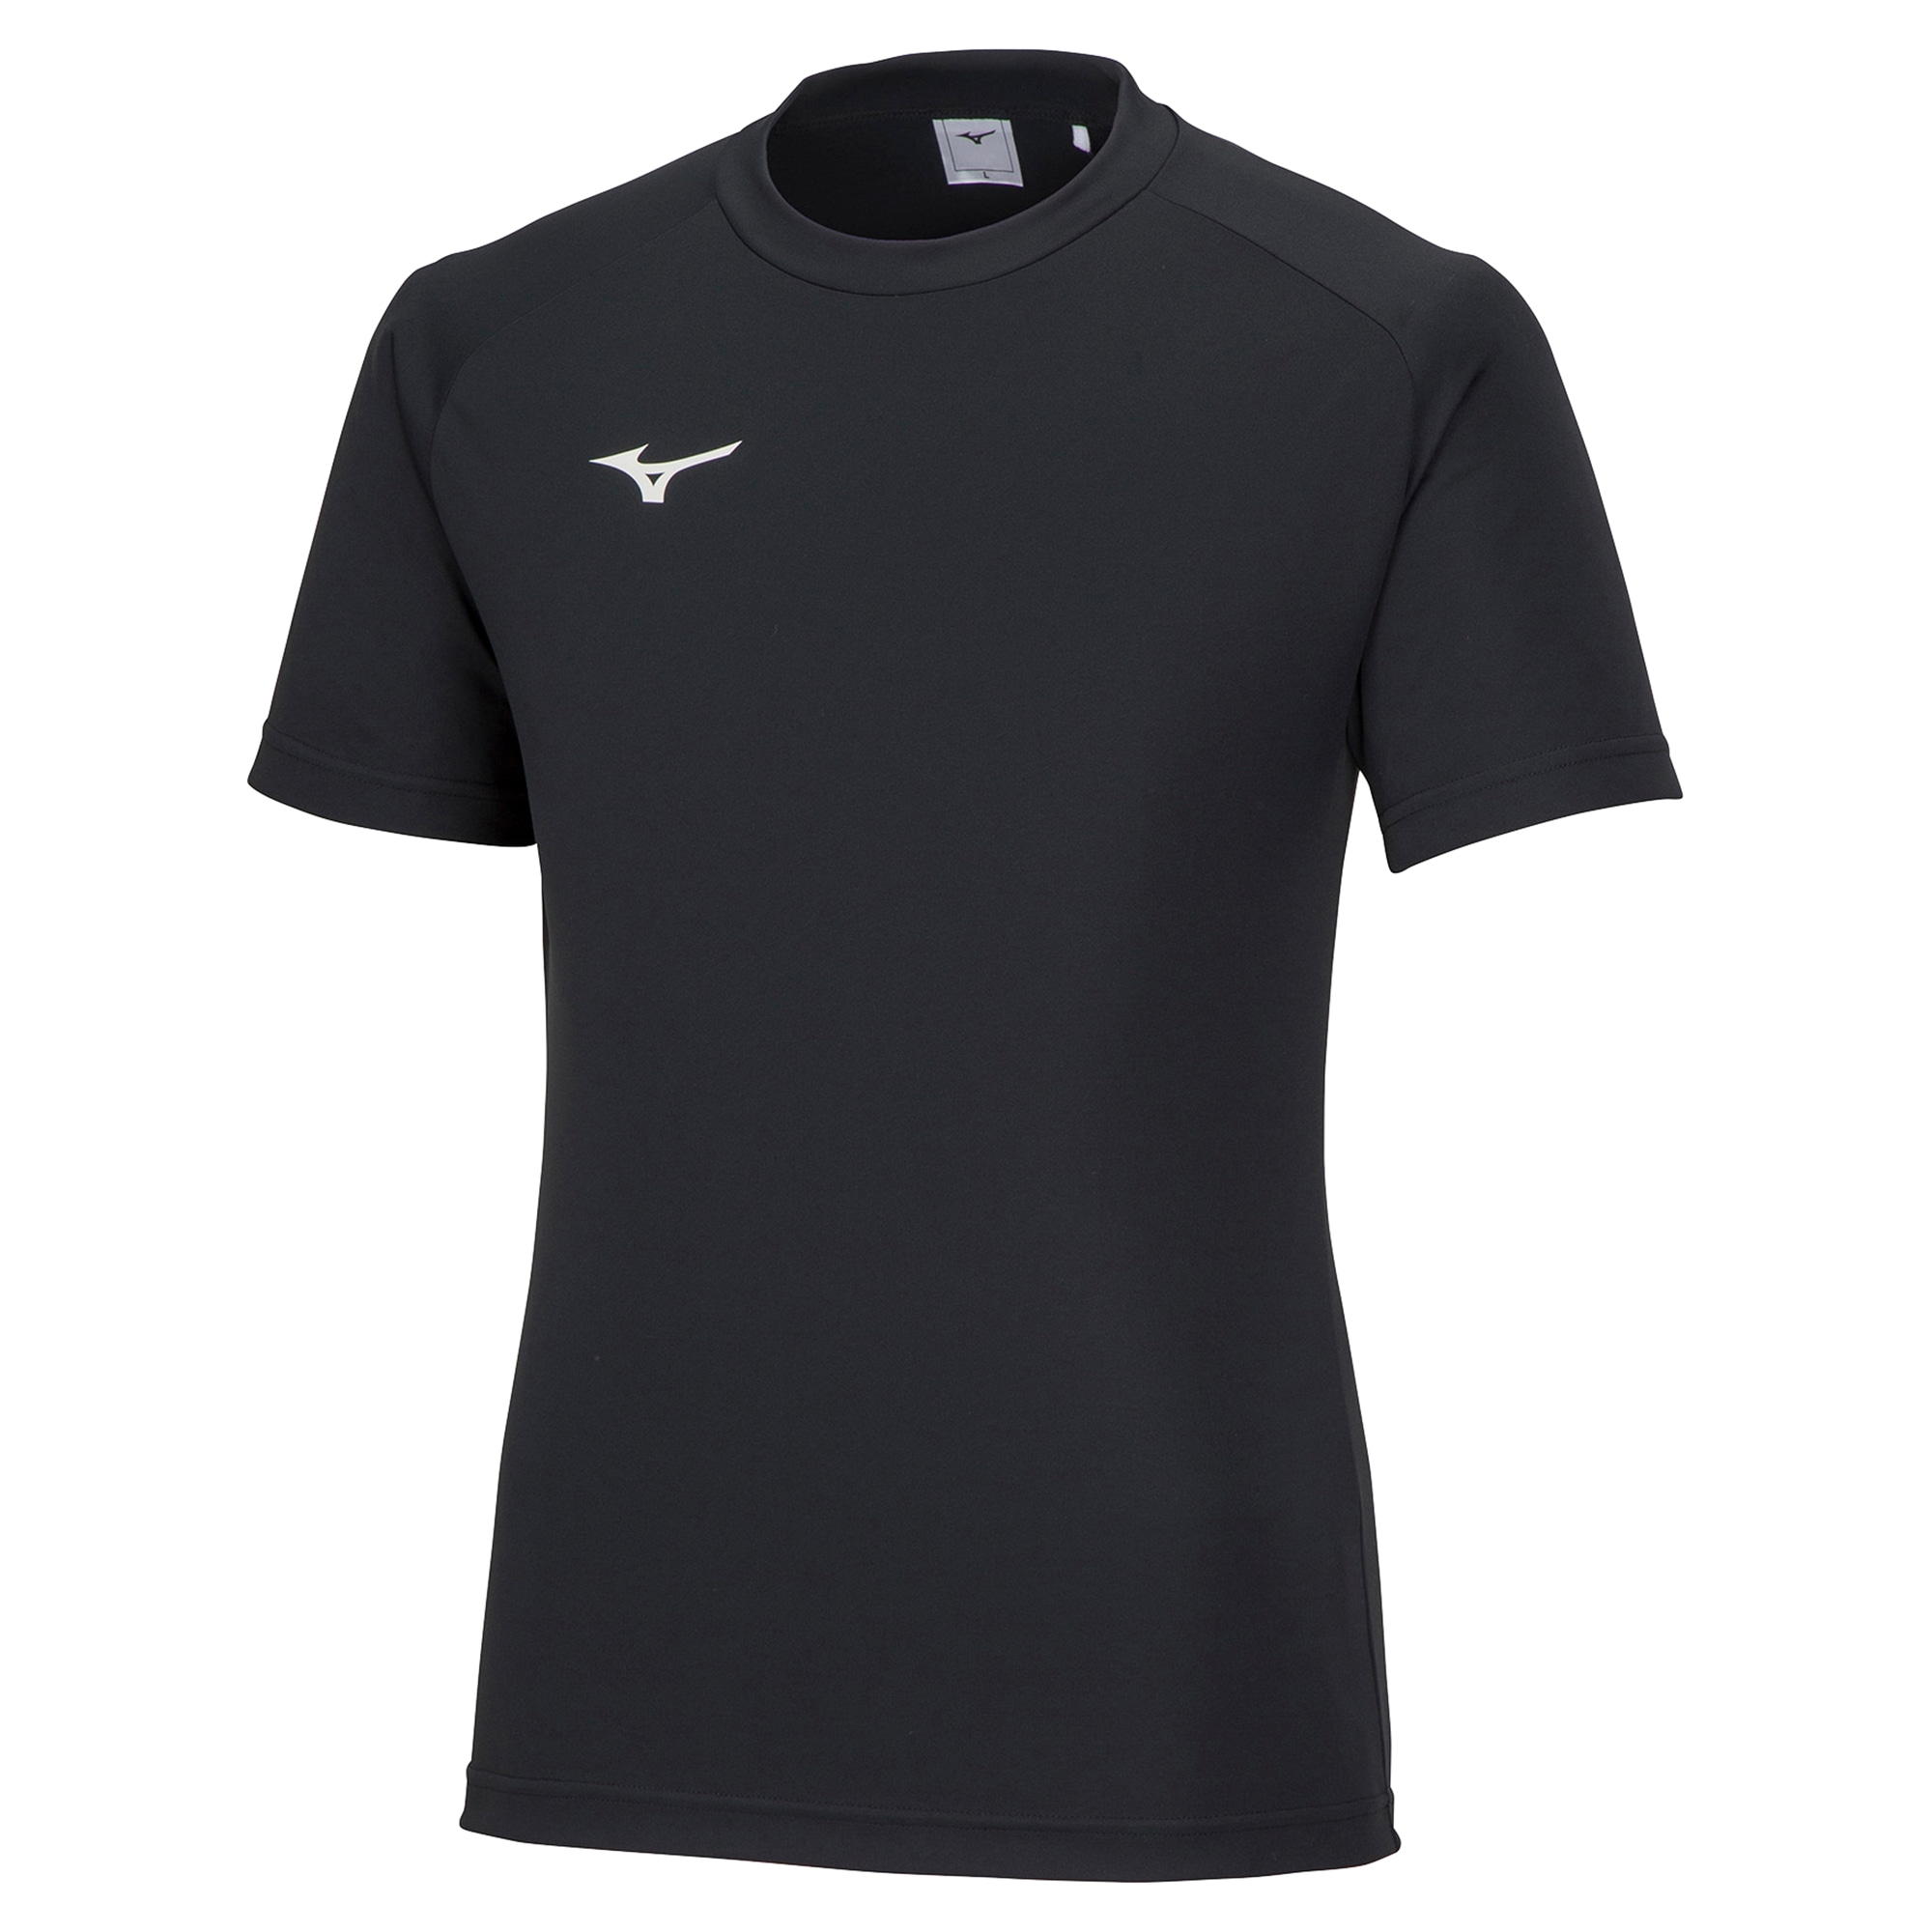 フィールドシャツ[ユニセックス]|P2MA8025|ウエア|サッカー